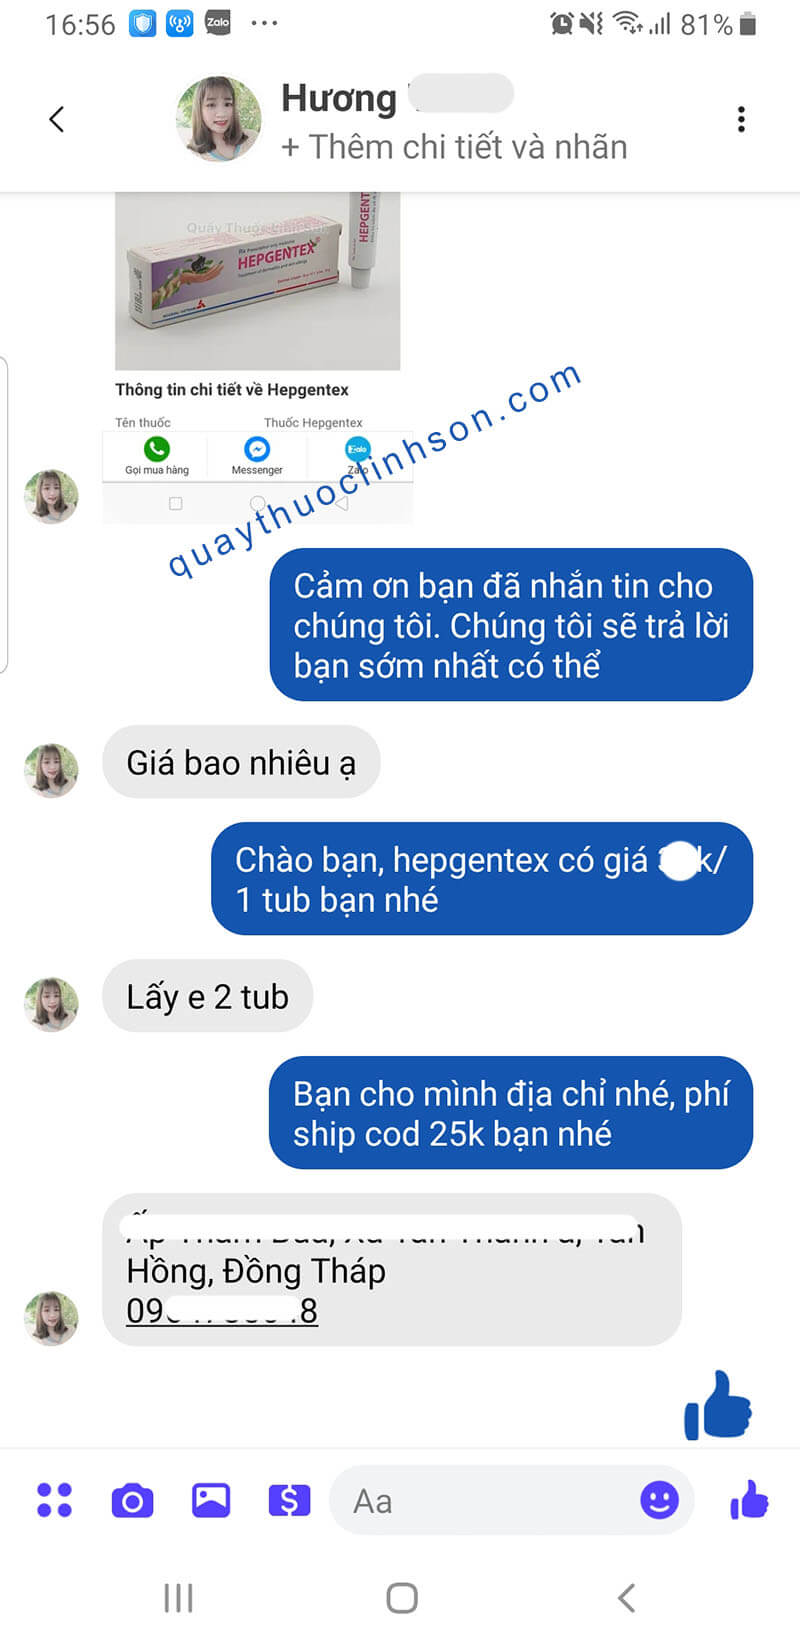 Bạn Hương ở Đồng Tháp mua 2 tub Hepgentex